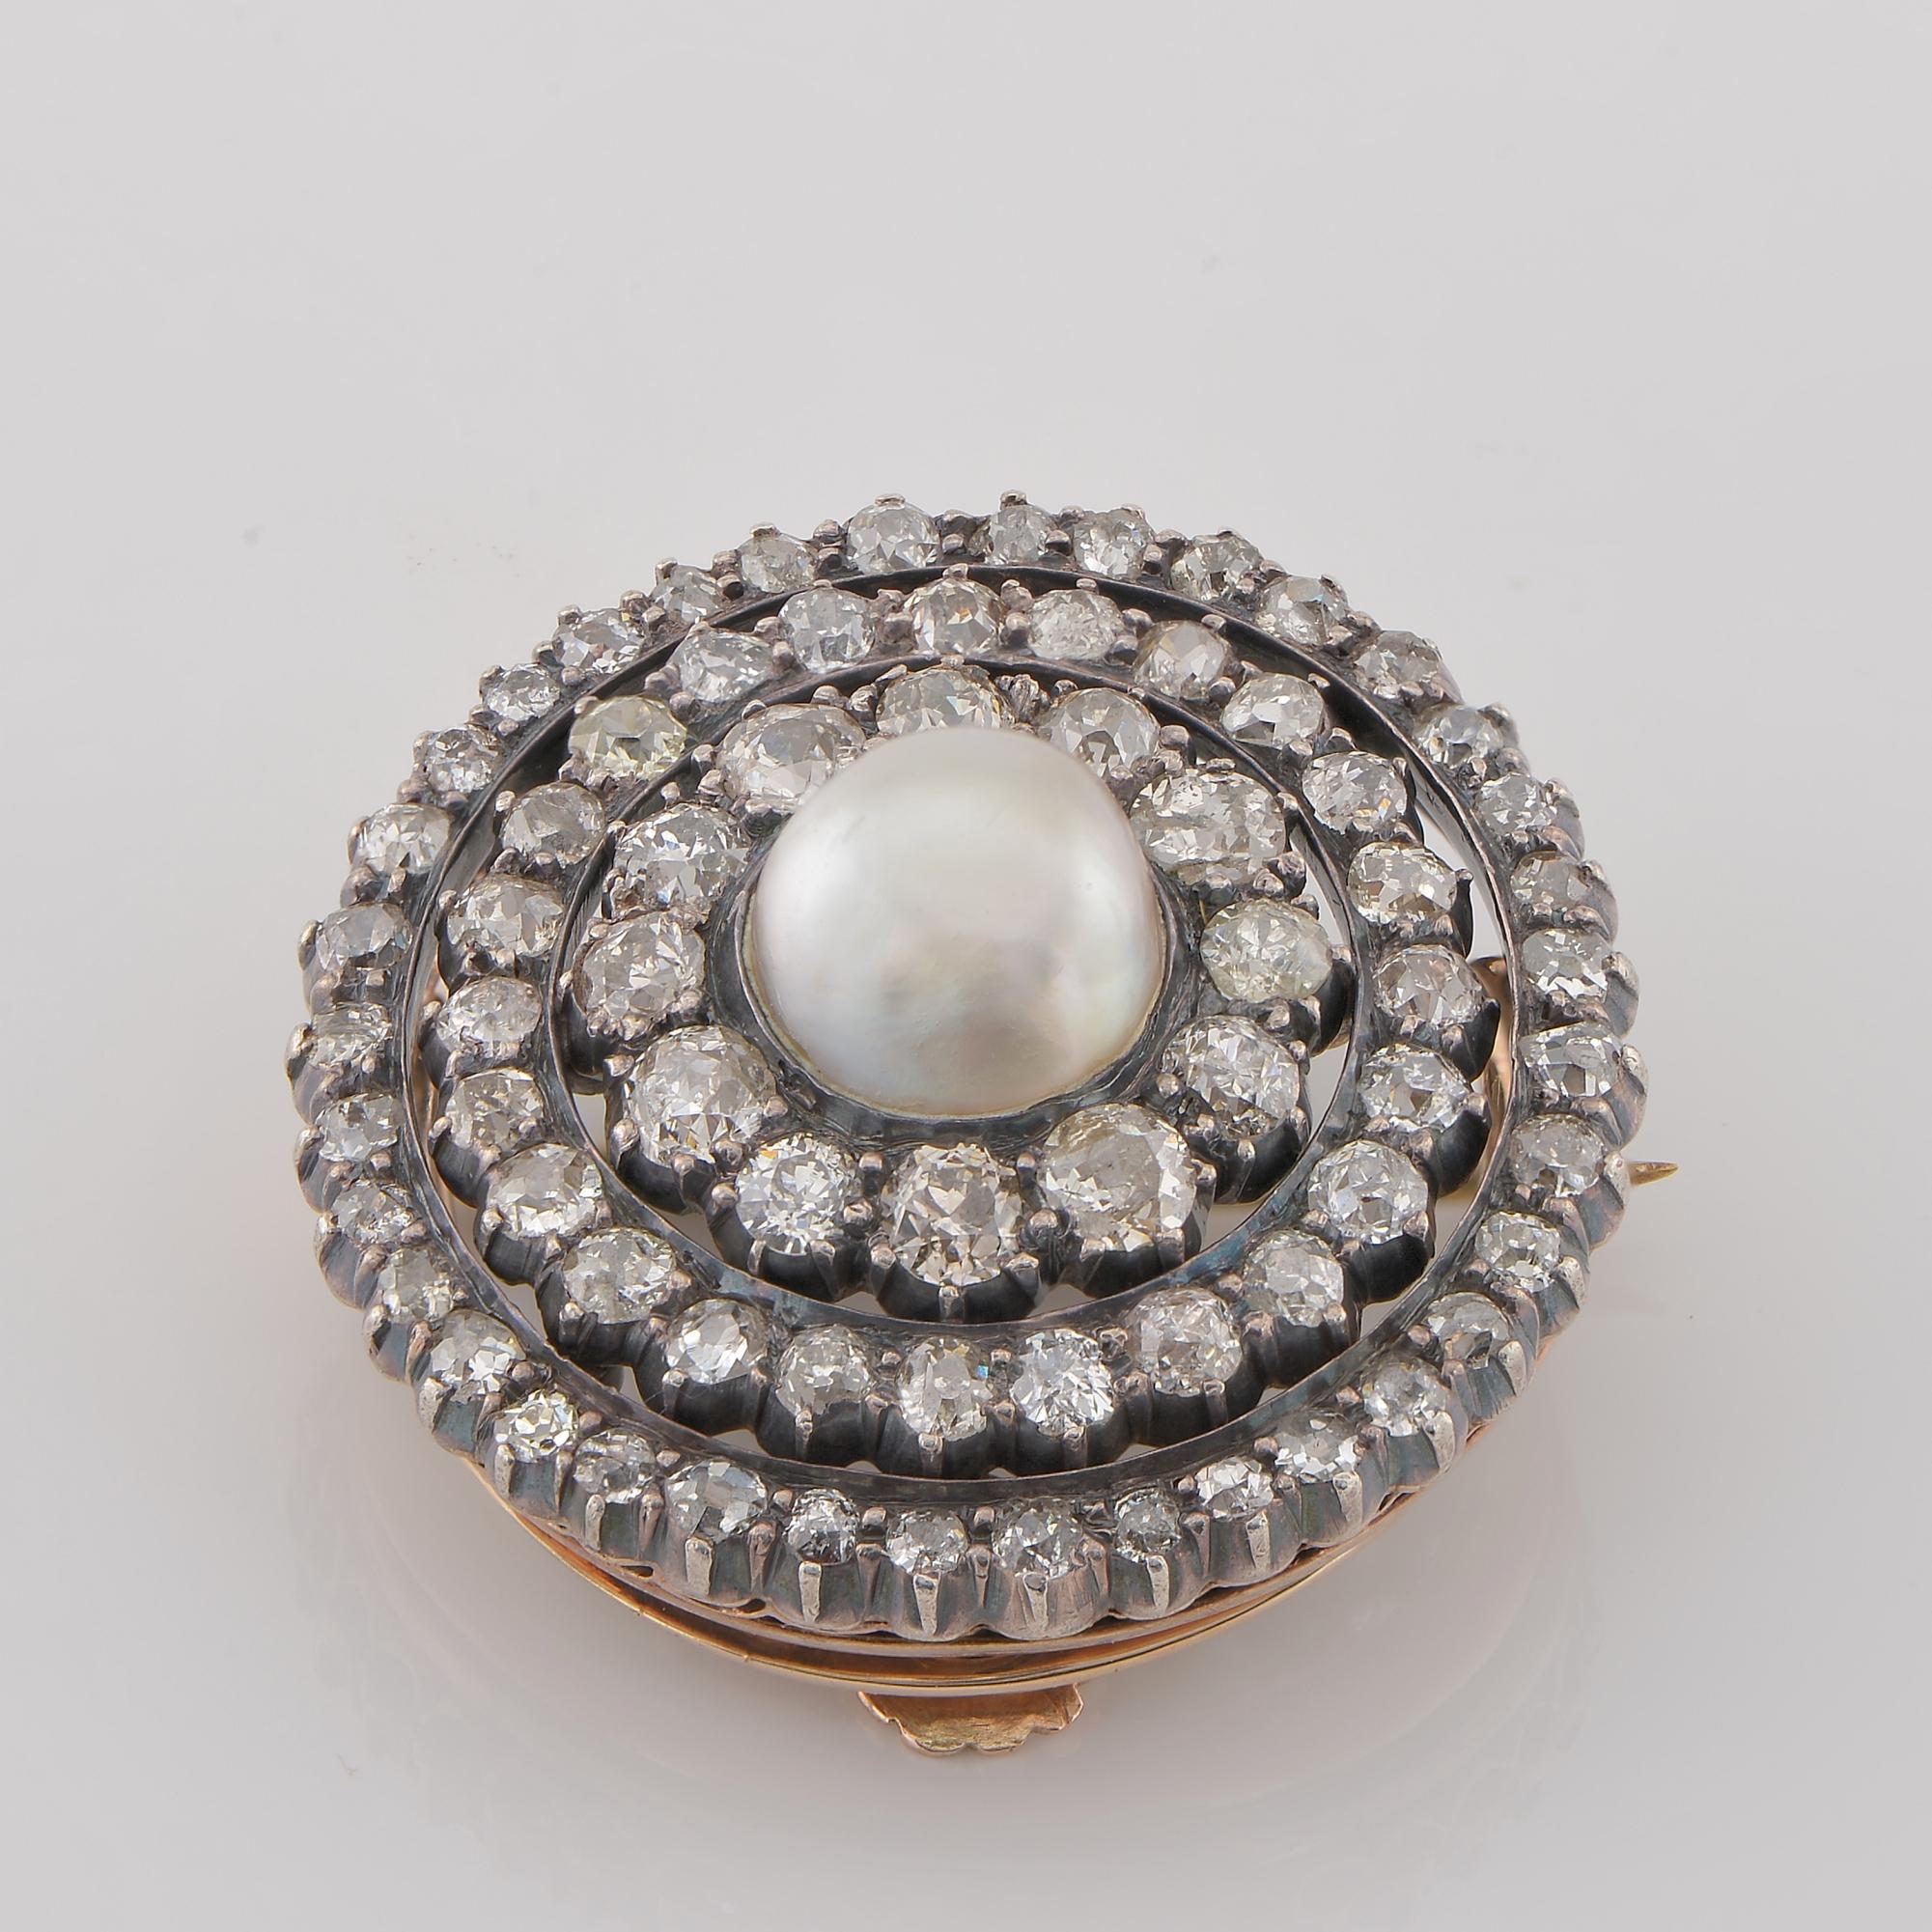 Broche à pendentif en diamant unique de style victorien, spécialement conçue à l'époque pour être un grand pendentif discret ou une magnifique broche. 
Une pièce originale datant de 1850/1880 env.
Fabriqué à la main à l'époque en or massif 18 carats